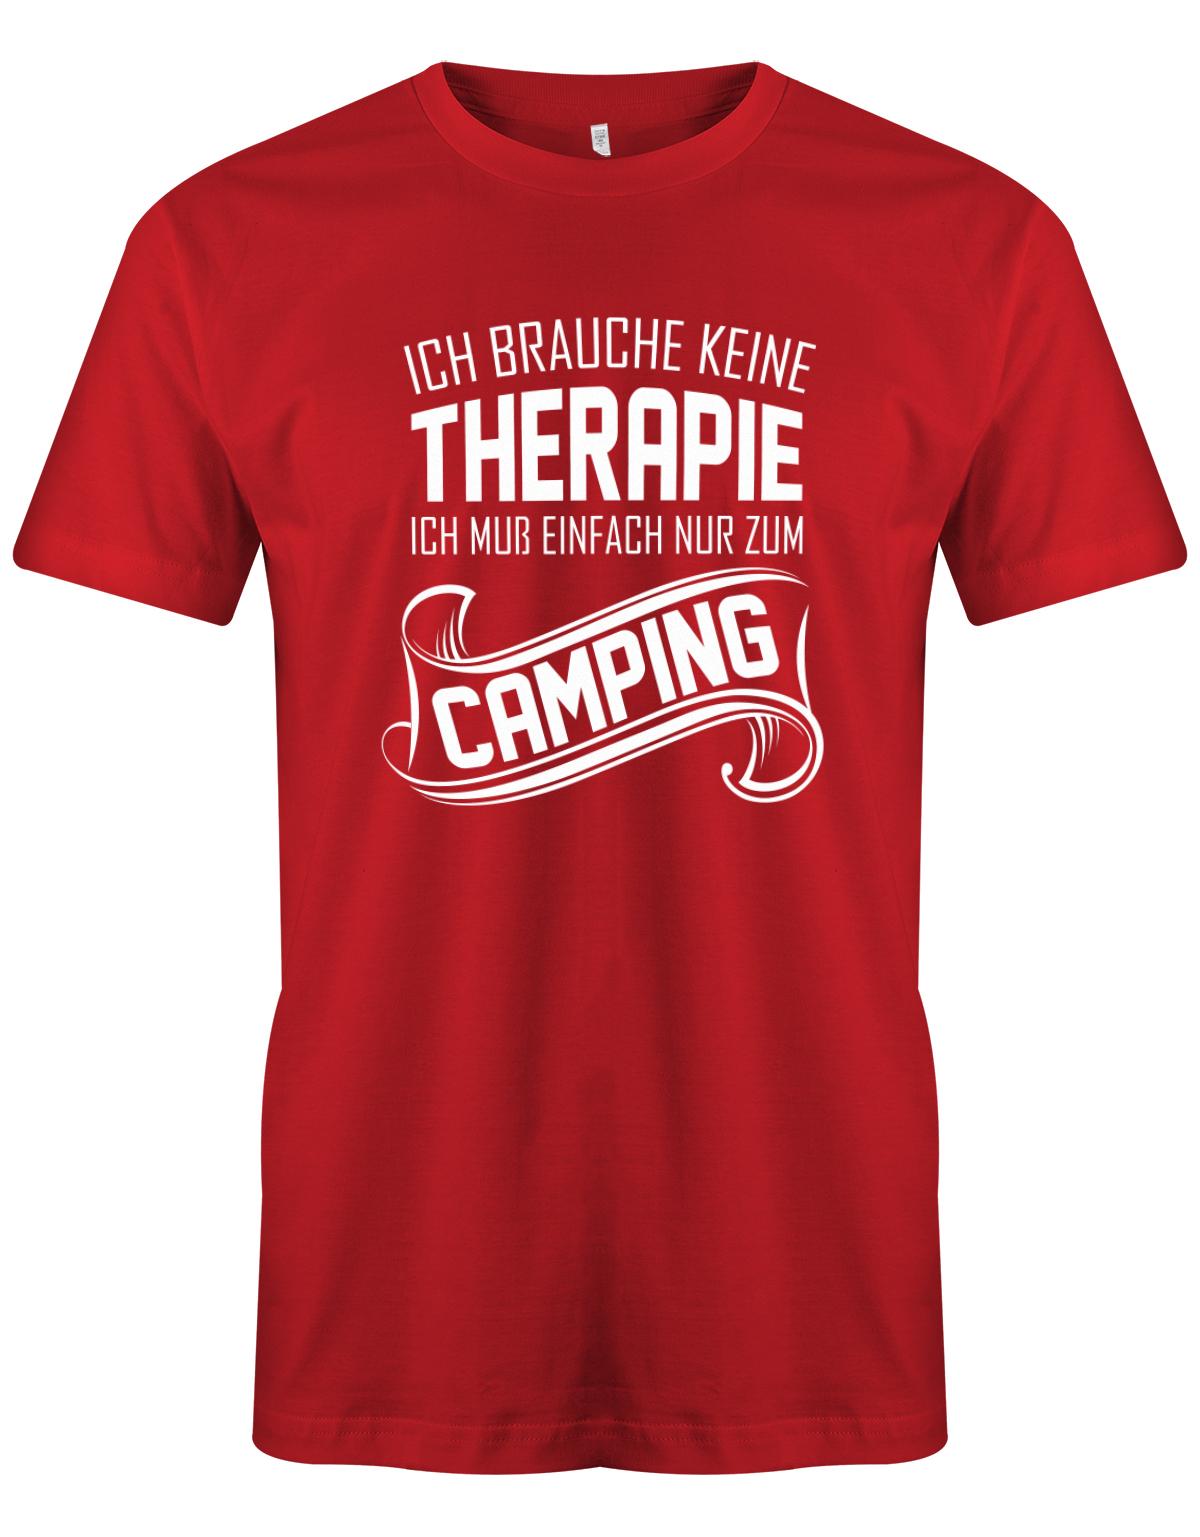 Ich-brauche-keine-Therapie-ich-muss-einfach-nur-zum-camping-Herren-Camper-Shirt-Rot